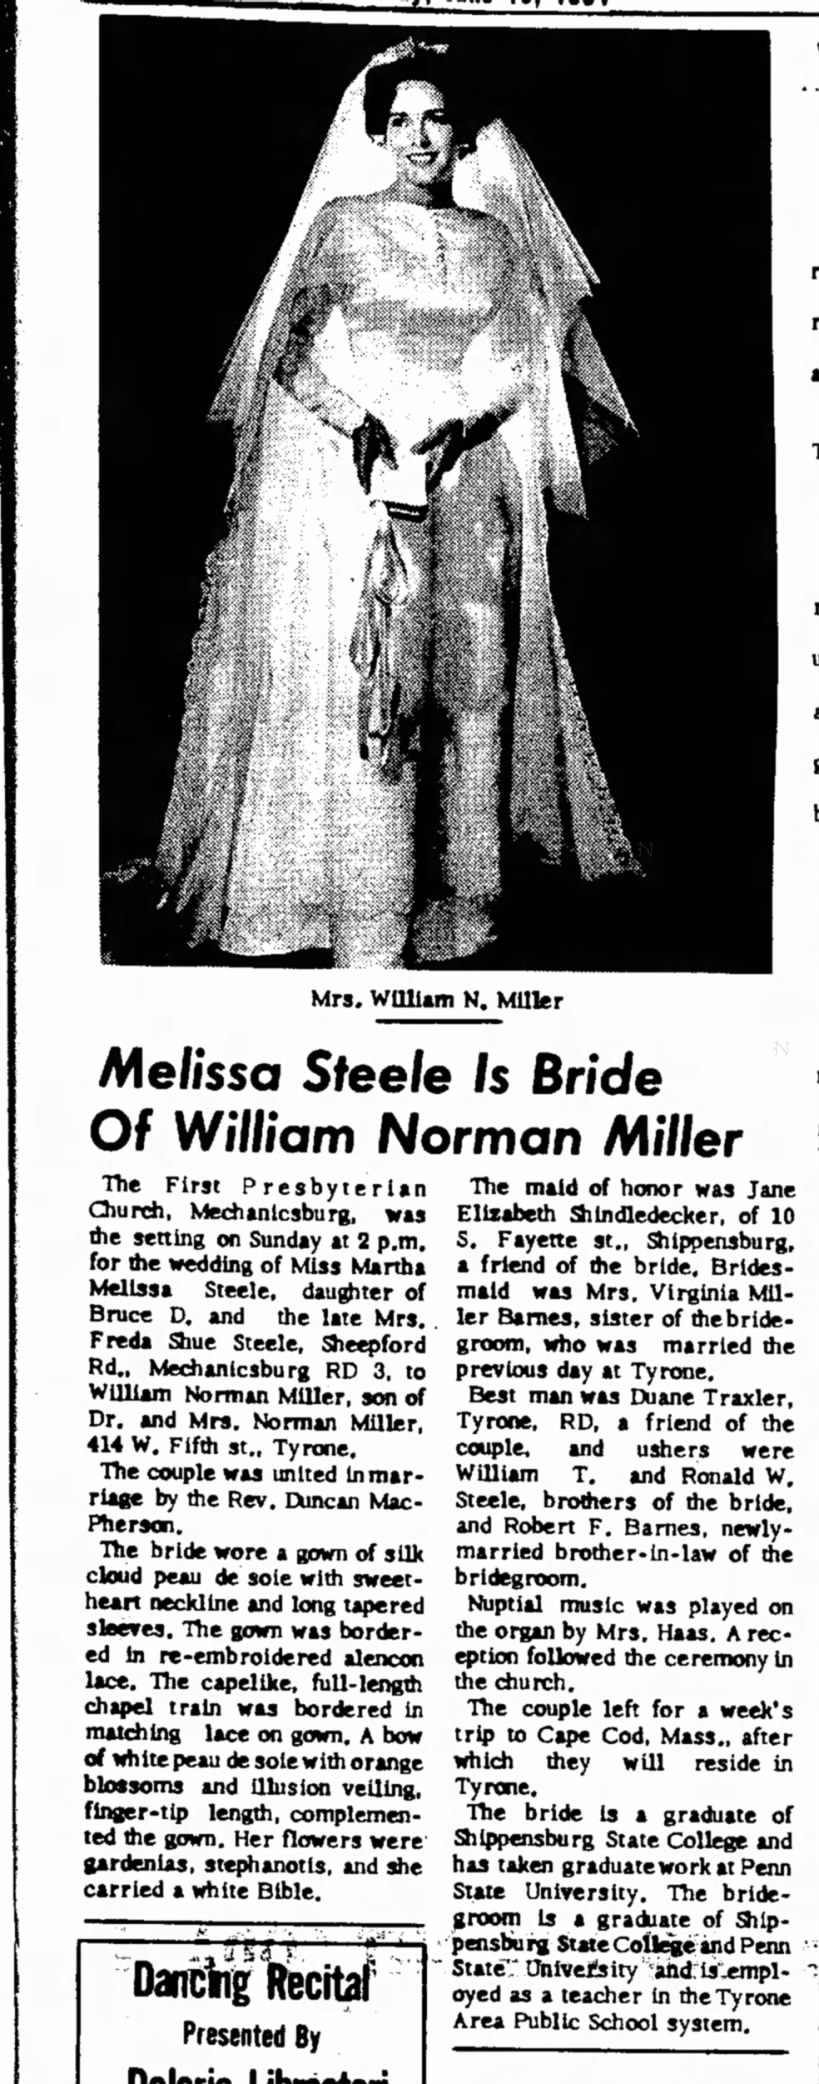 Melissa Steele is Bride of William Norman Miller.